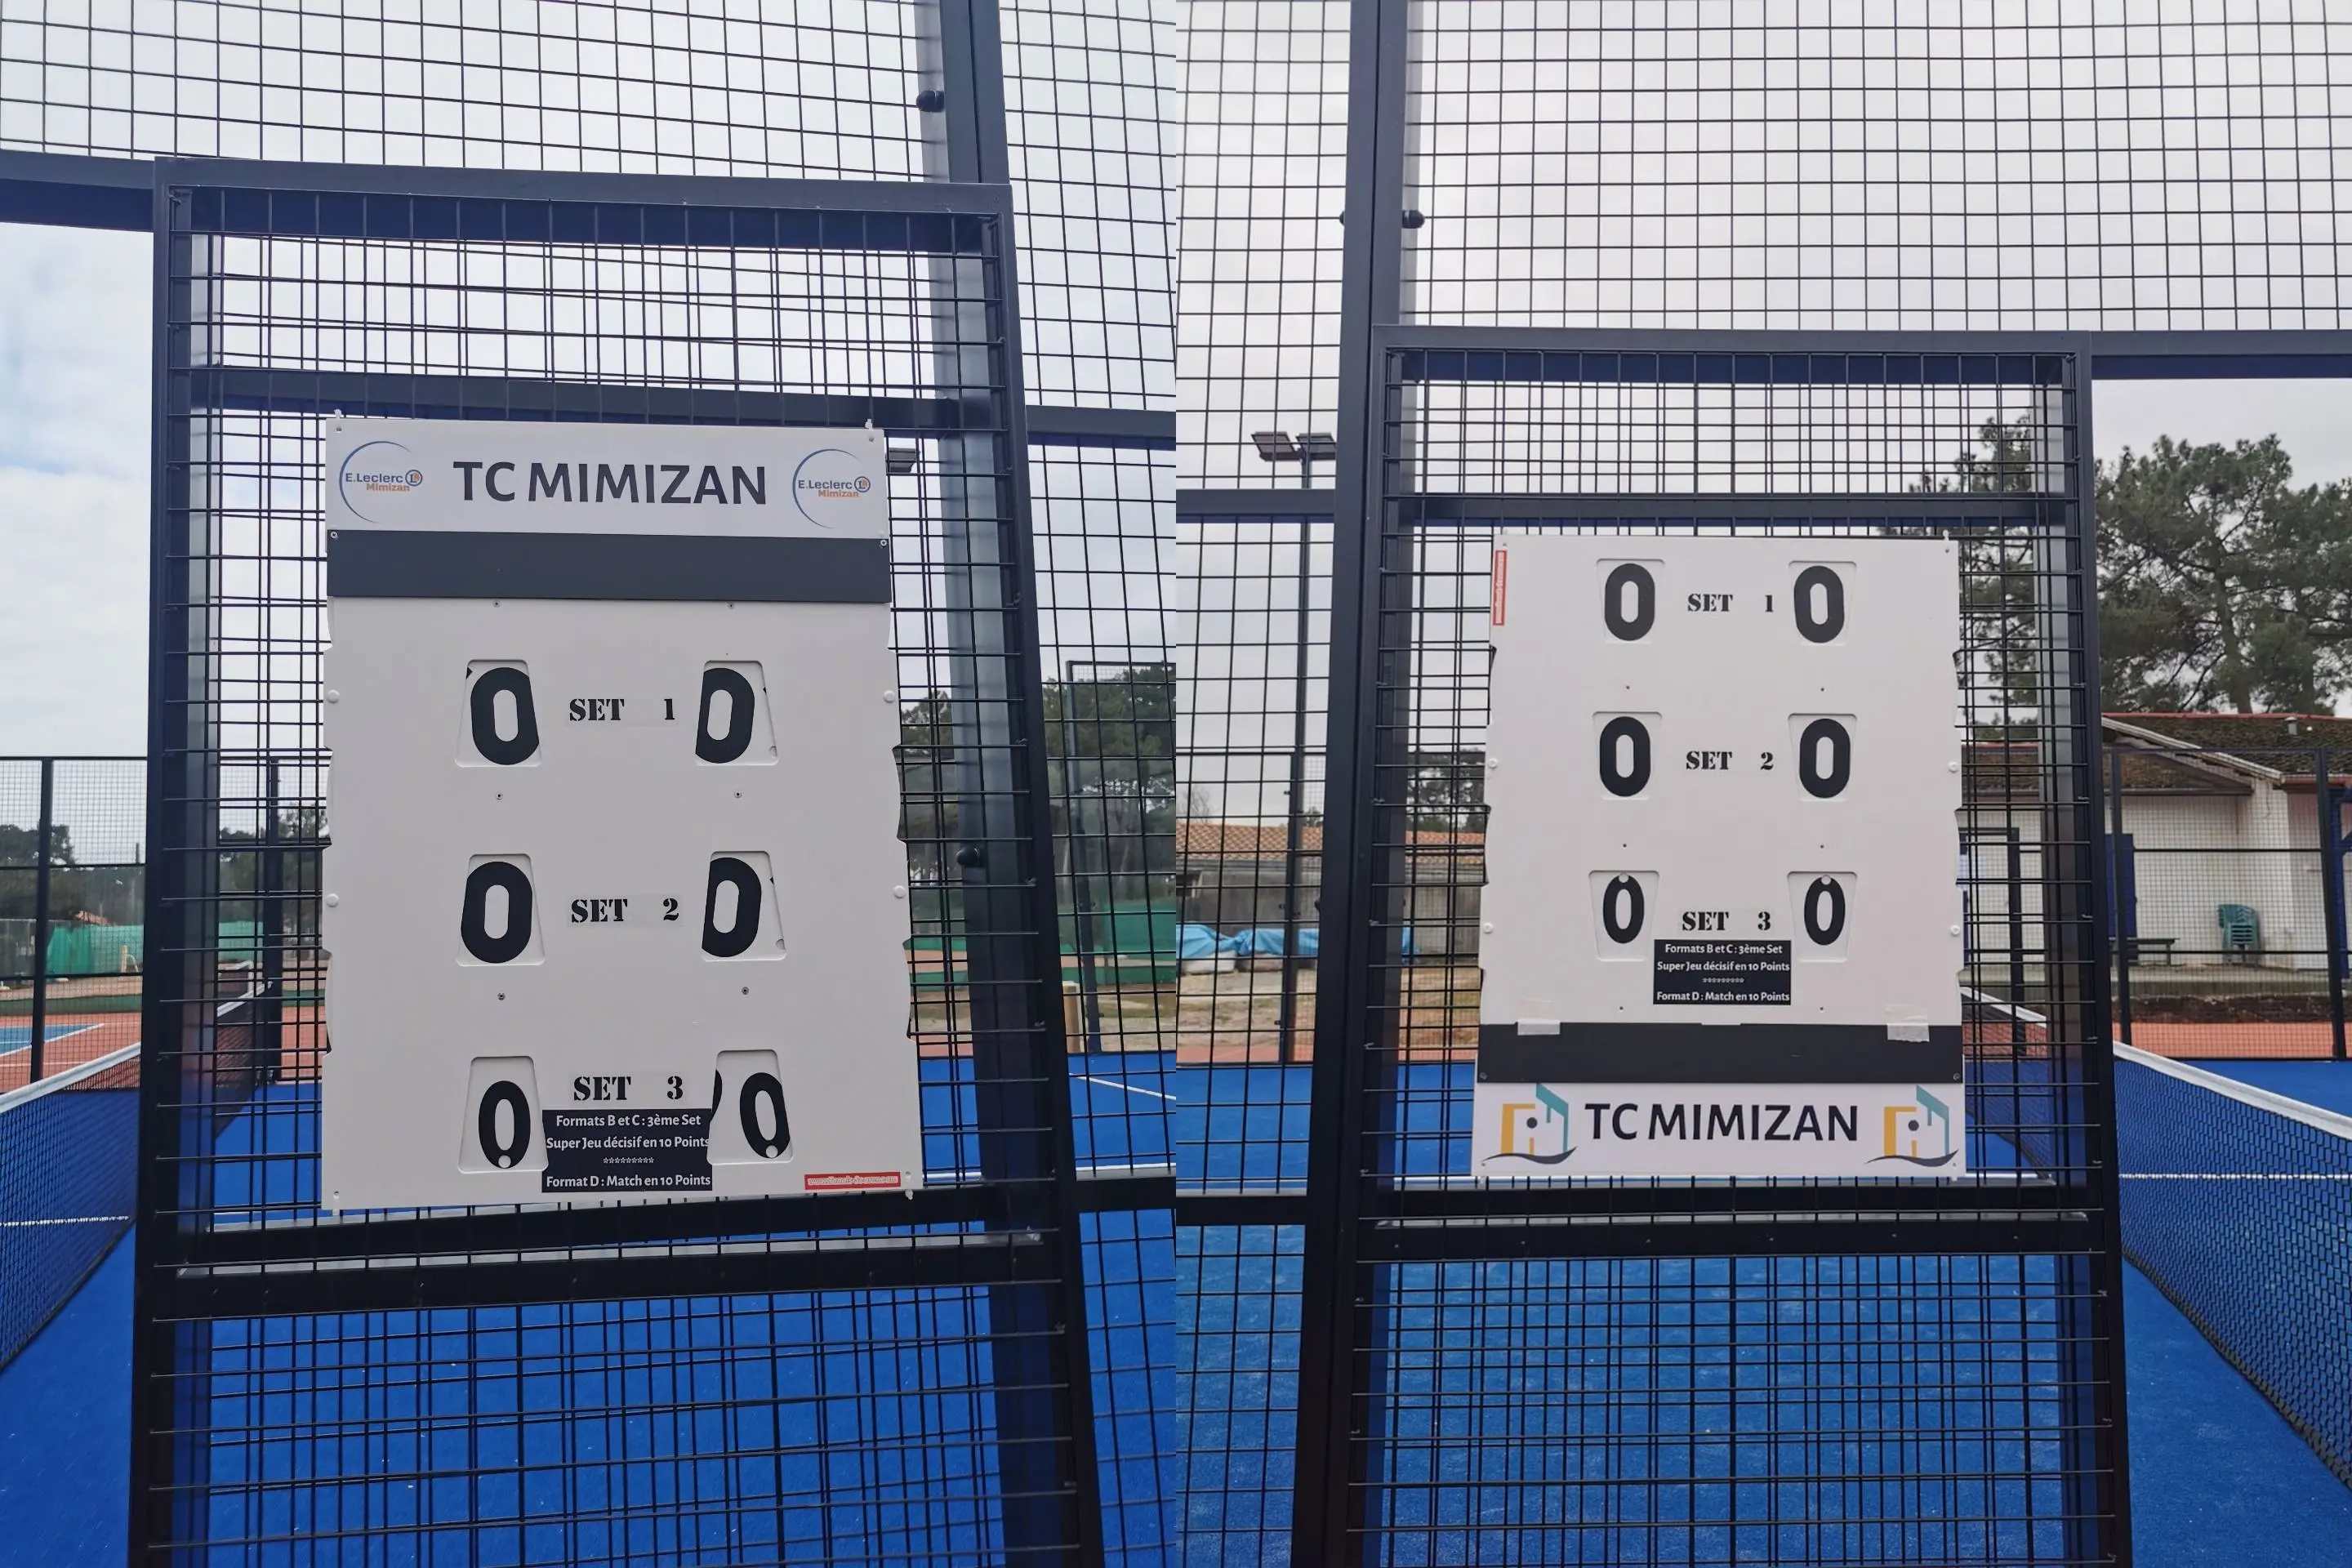 Tabellone segnapunti manuale 60x80 cm per Padel Tennis basket pallamano indeperibile per tutte le stagioni all'aperto o al coperto